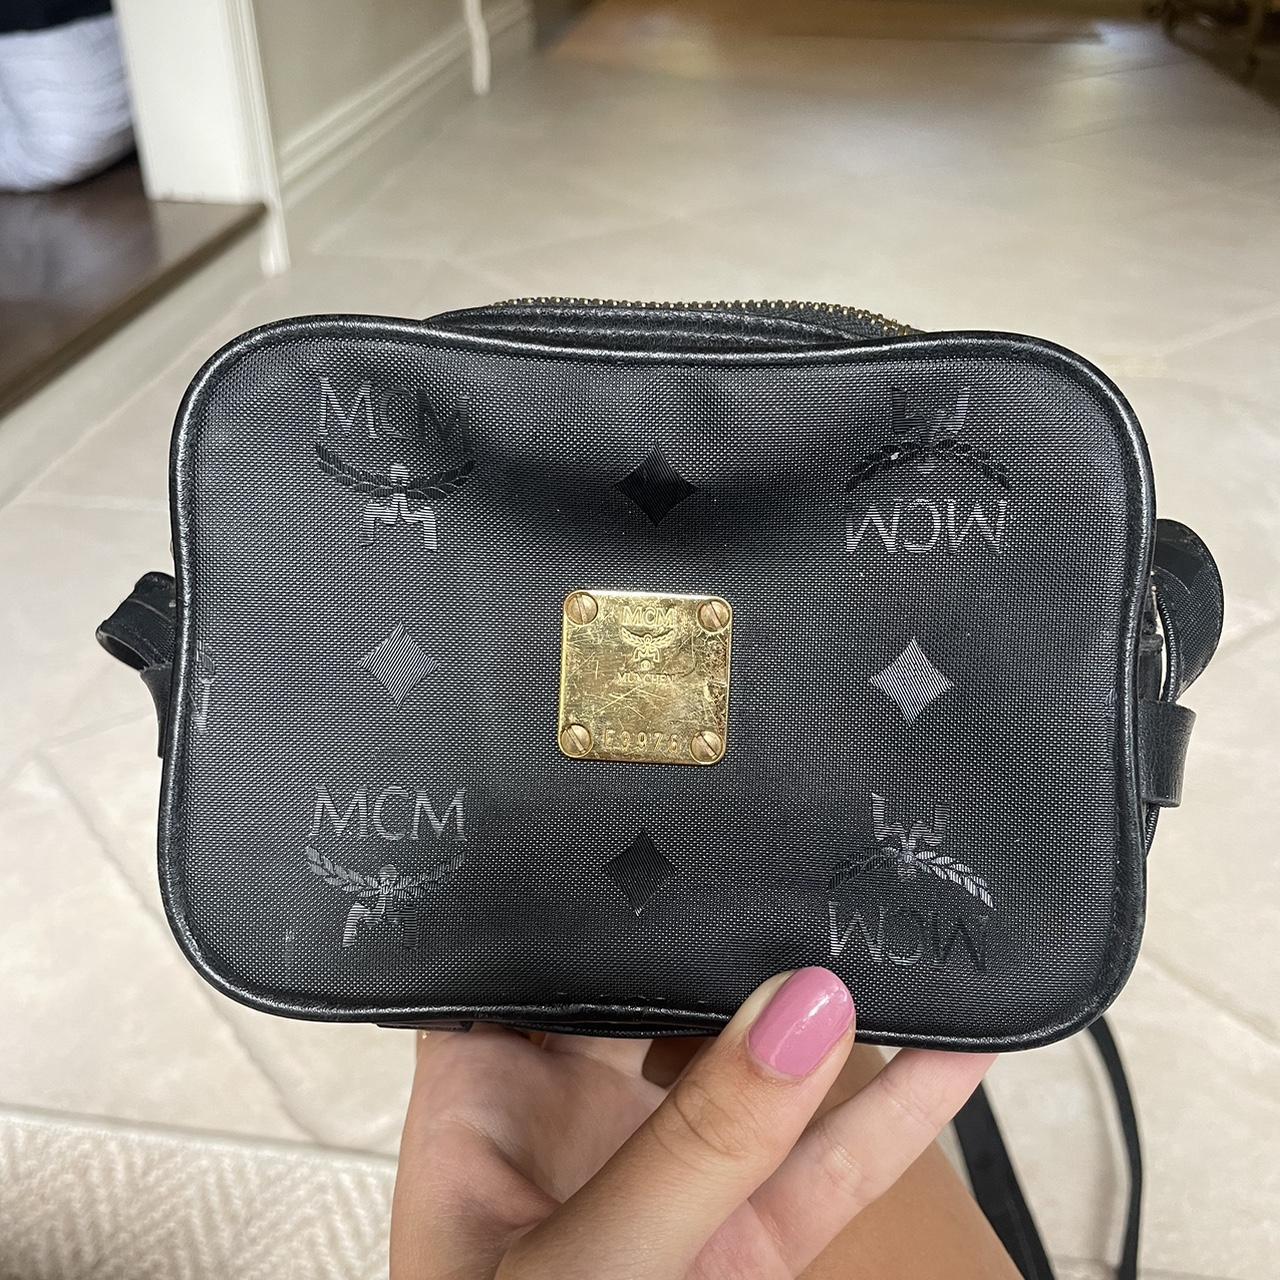 Pink/Gold MCM backpack, signs of wear evident inside - Depop